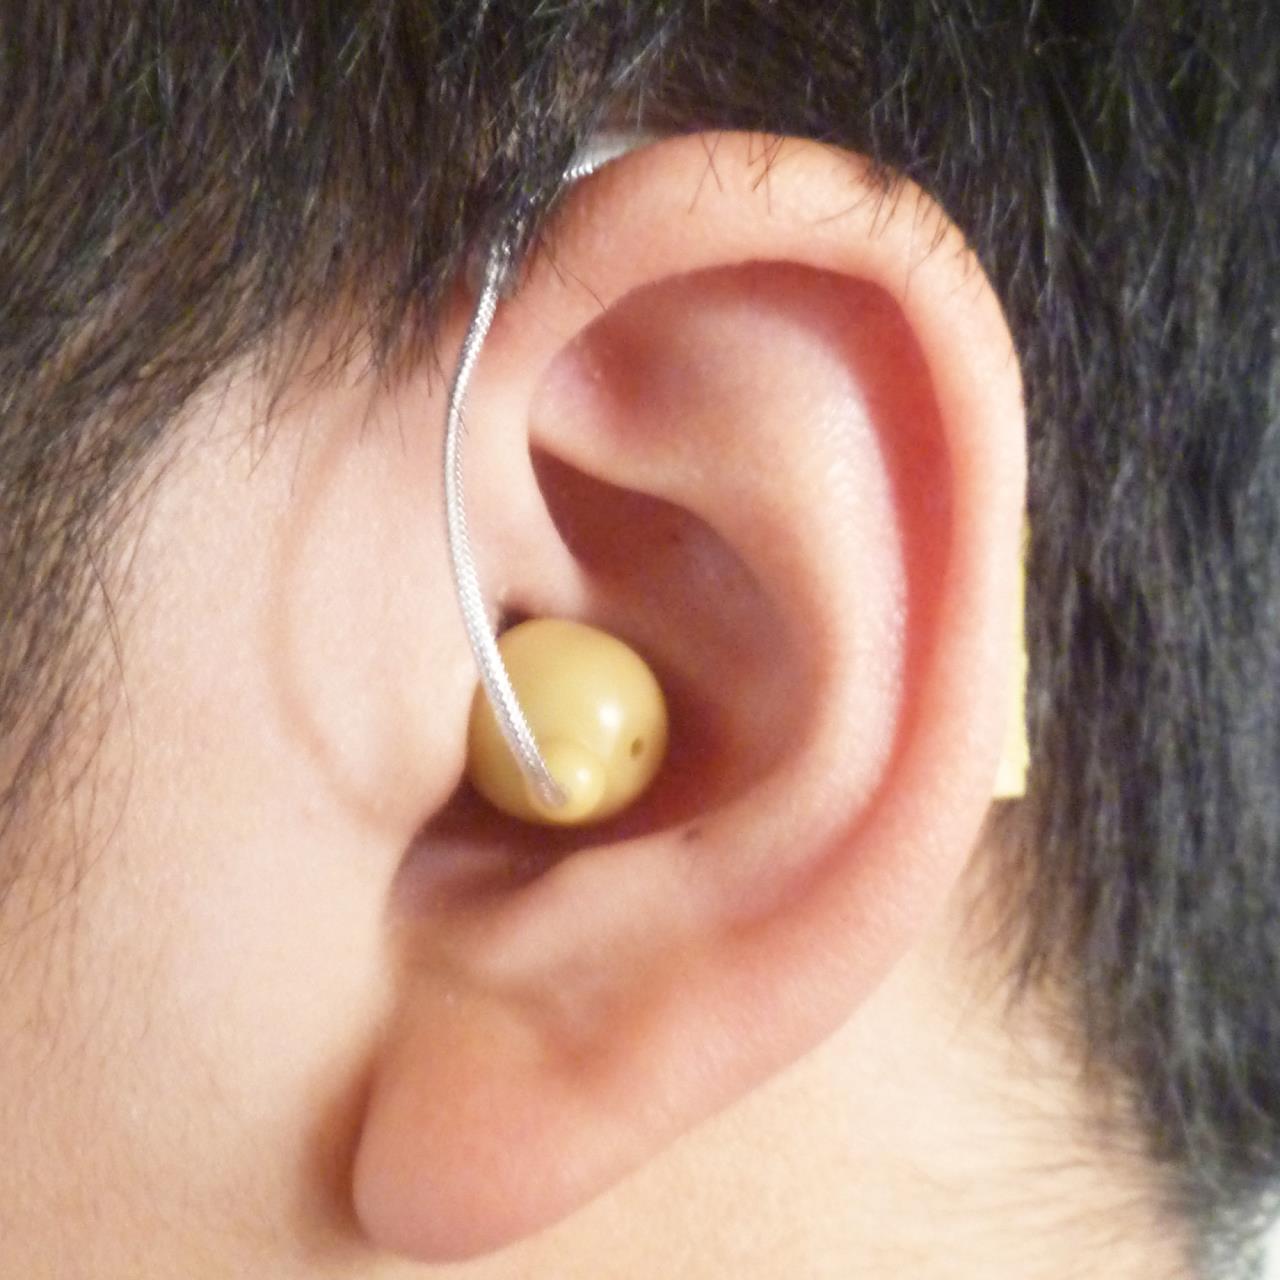 Paire de mini prothèses auditives derrière l'oreille BTE-27 Prothèses auditives rechargeables Conçues et fabriquées aux États-Unis Vendues à plus de 12 000 dans le monde